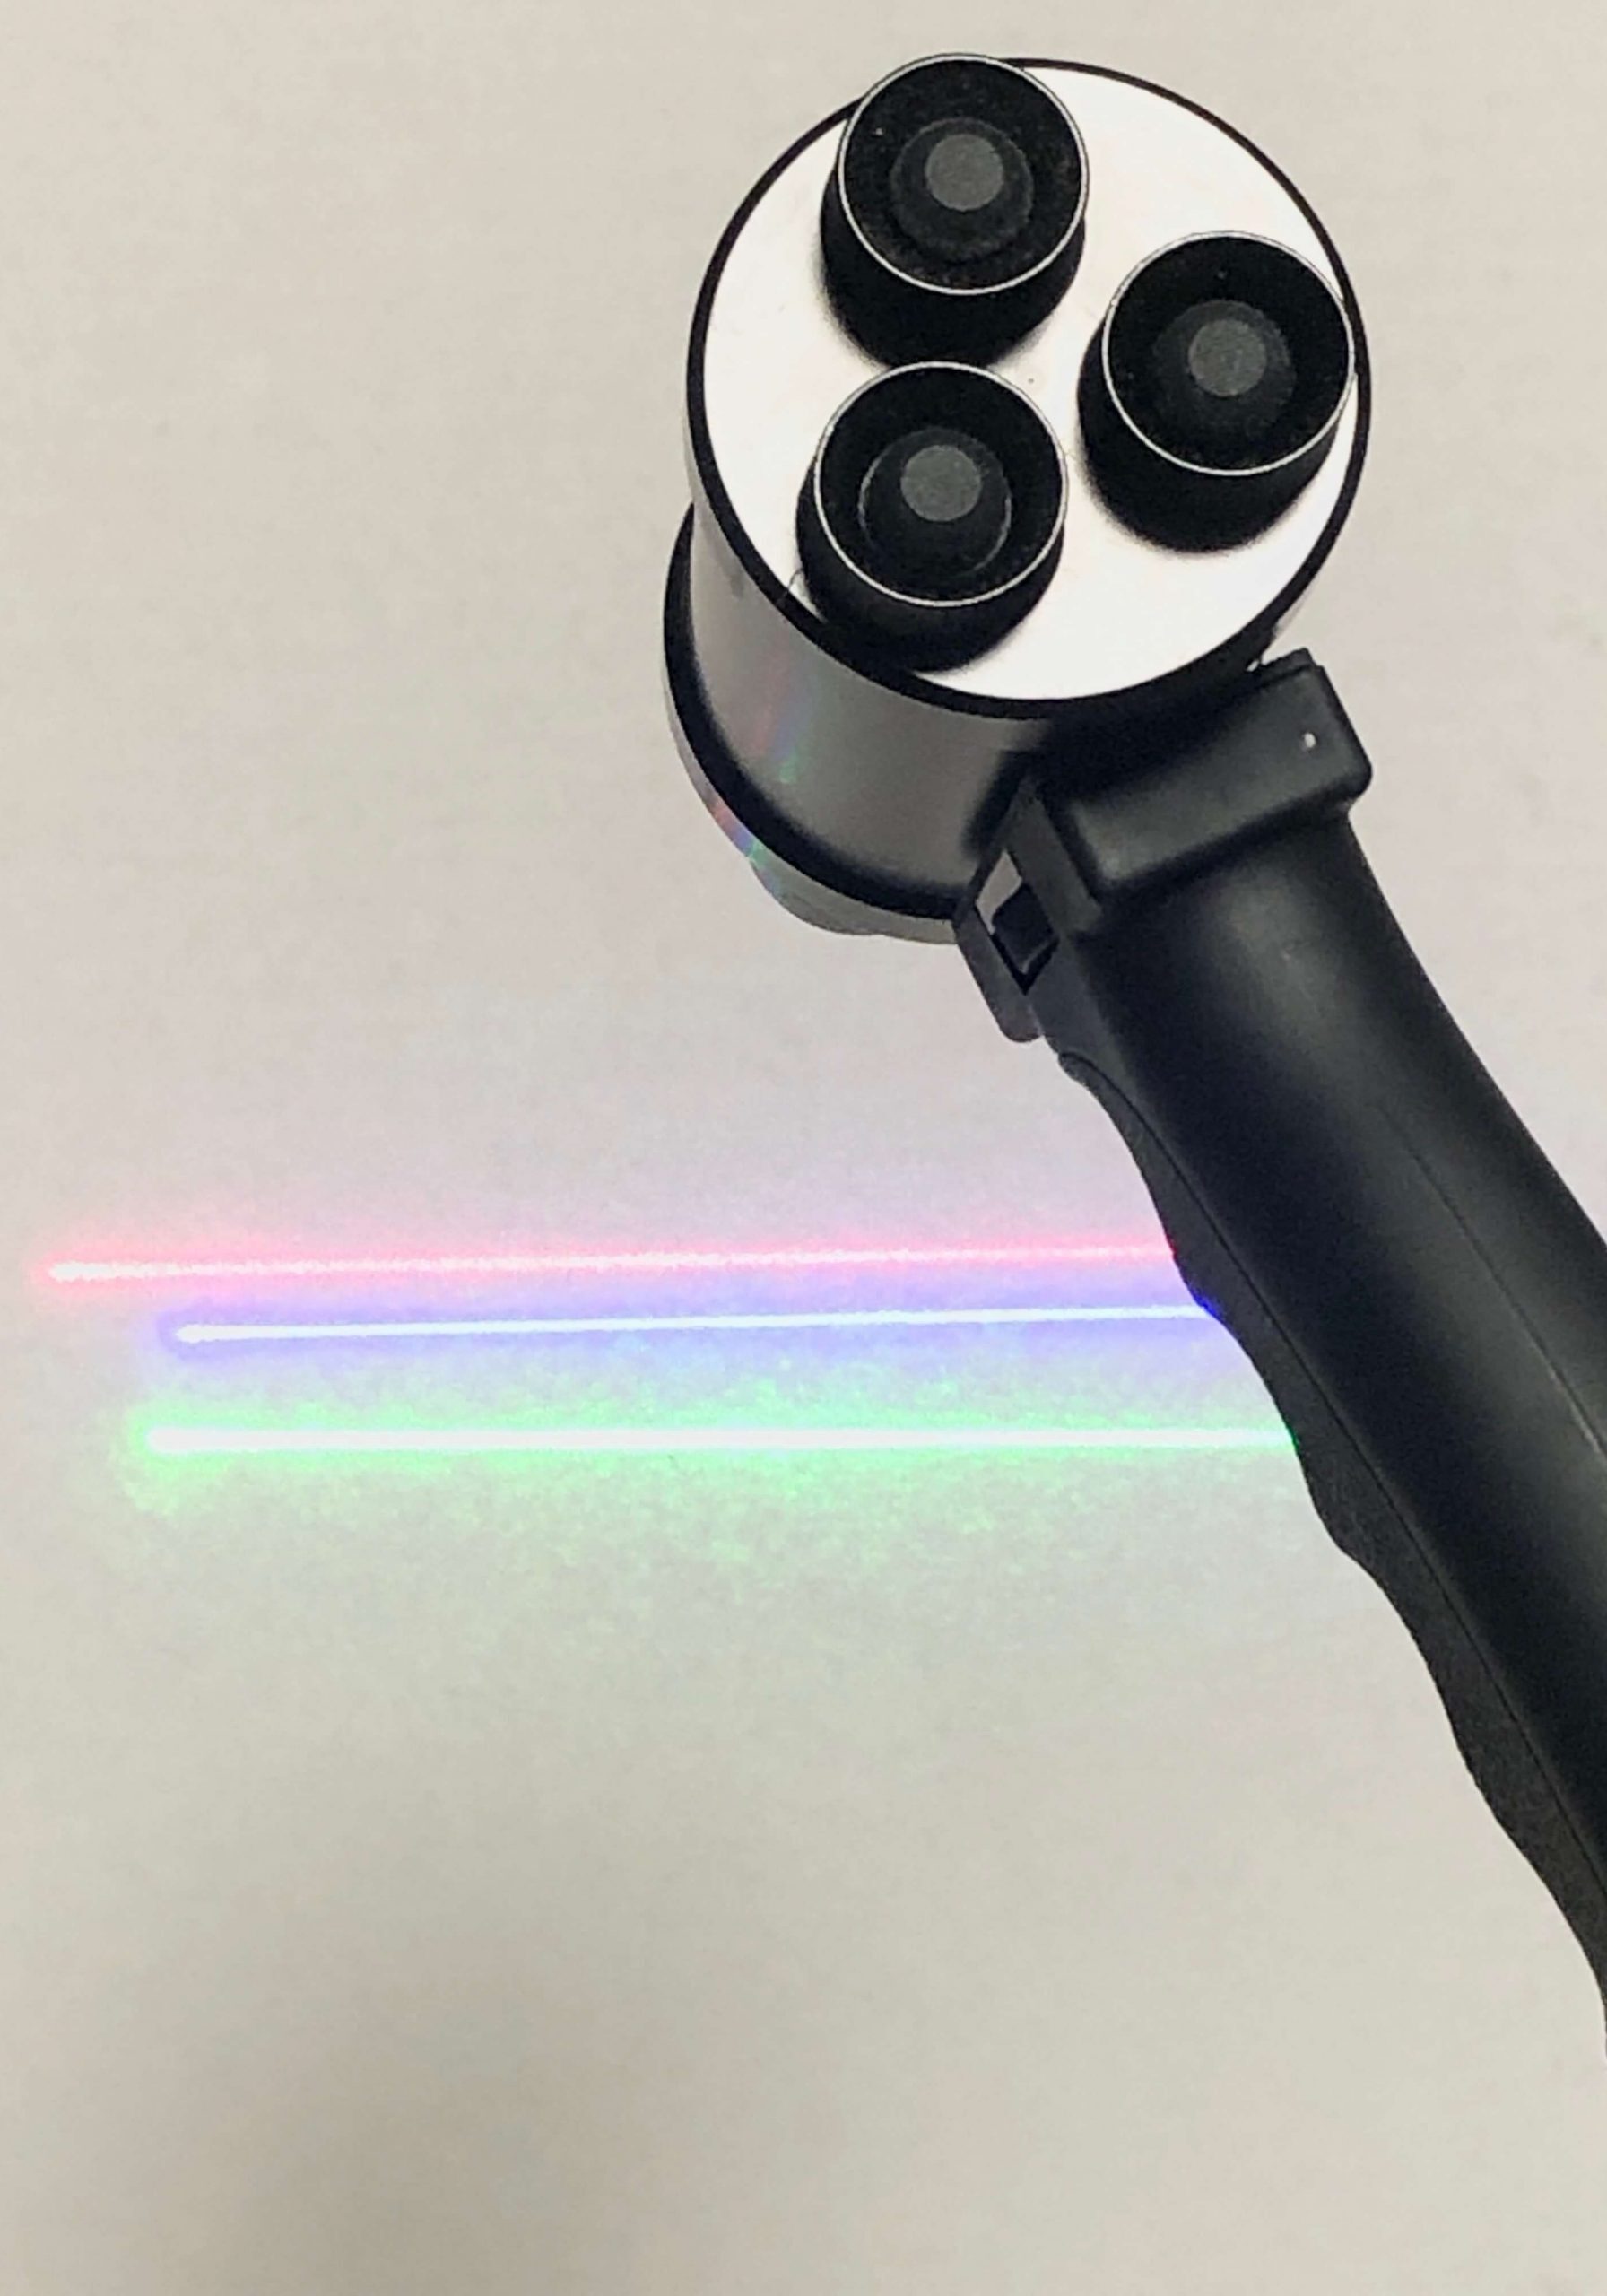 pro-laser-trilaser-holder-4